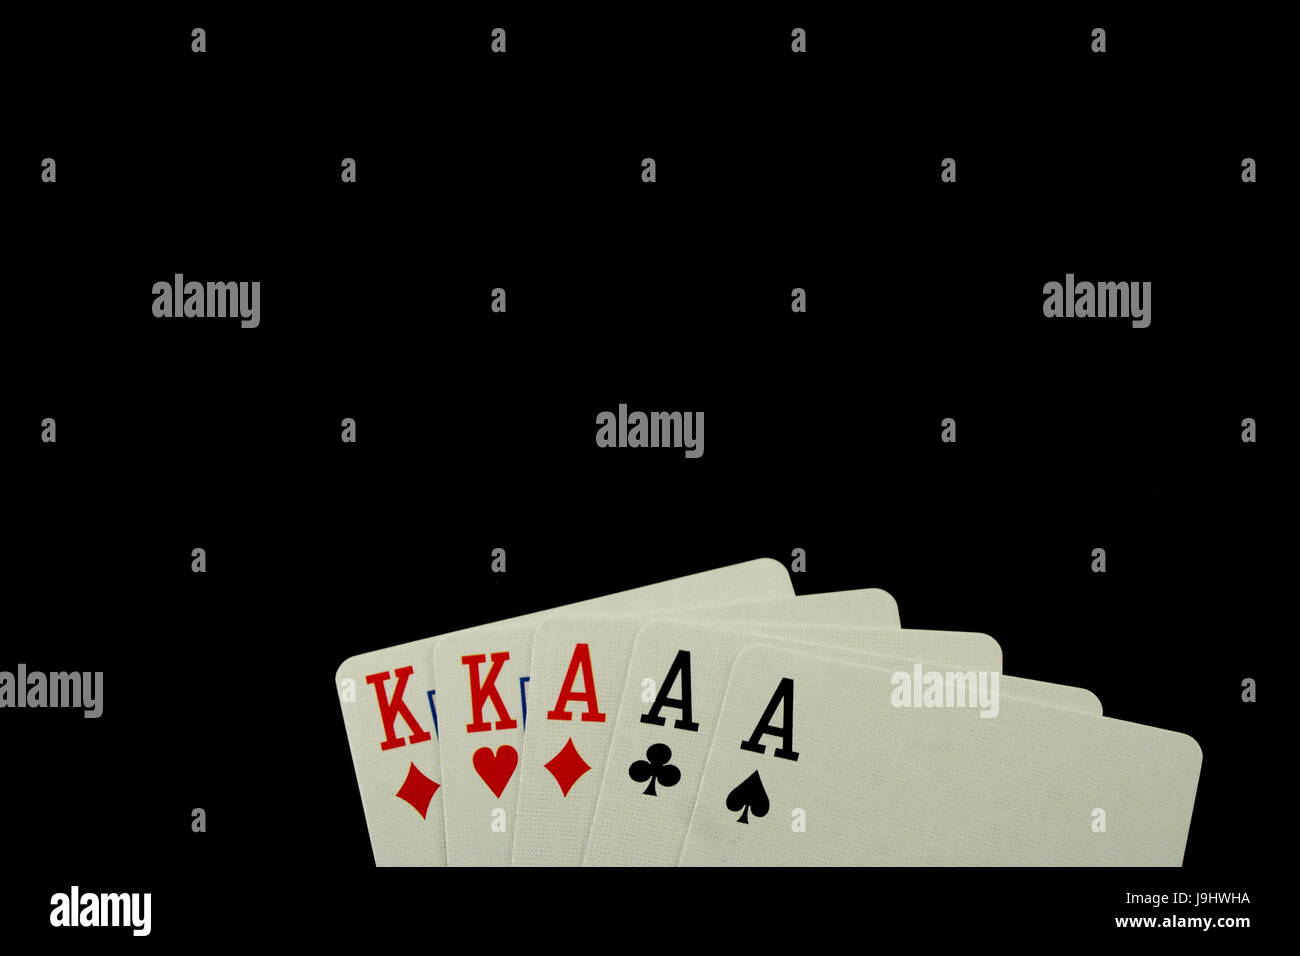 Poker Hand Full House on Black Background Stock Photo